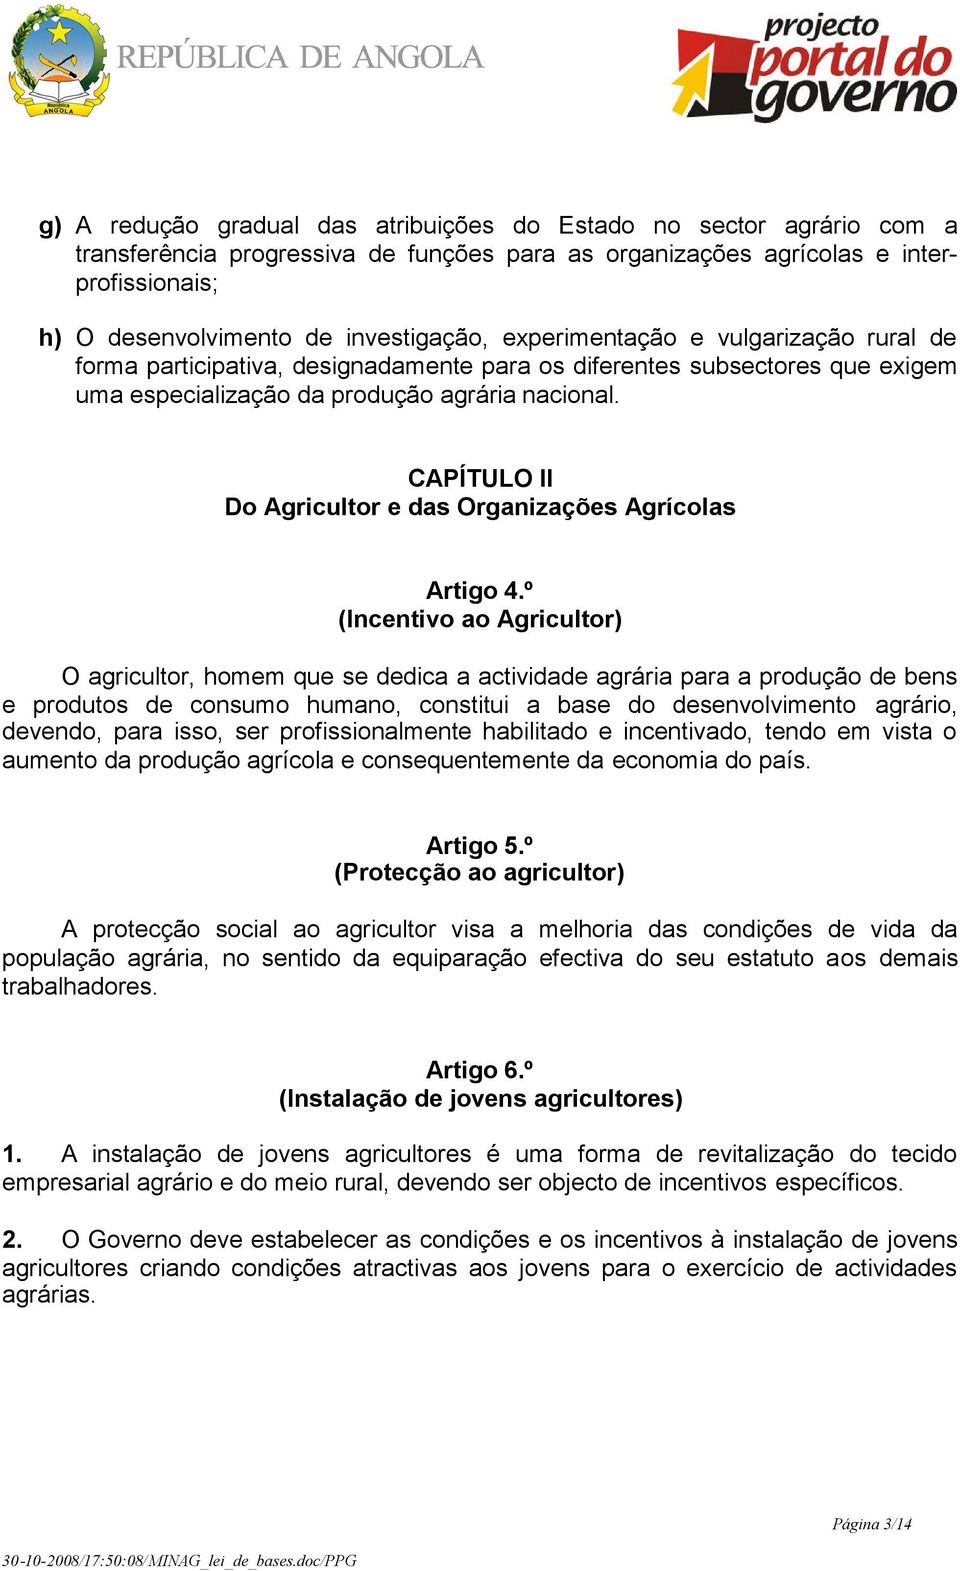 CAPÍTULO II Do Agricultor e das Organizações Agrícolas Artigo 4.